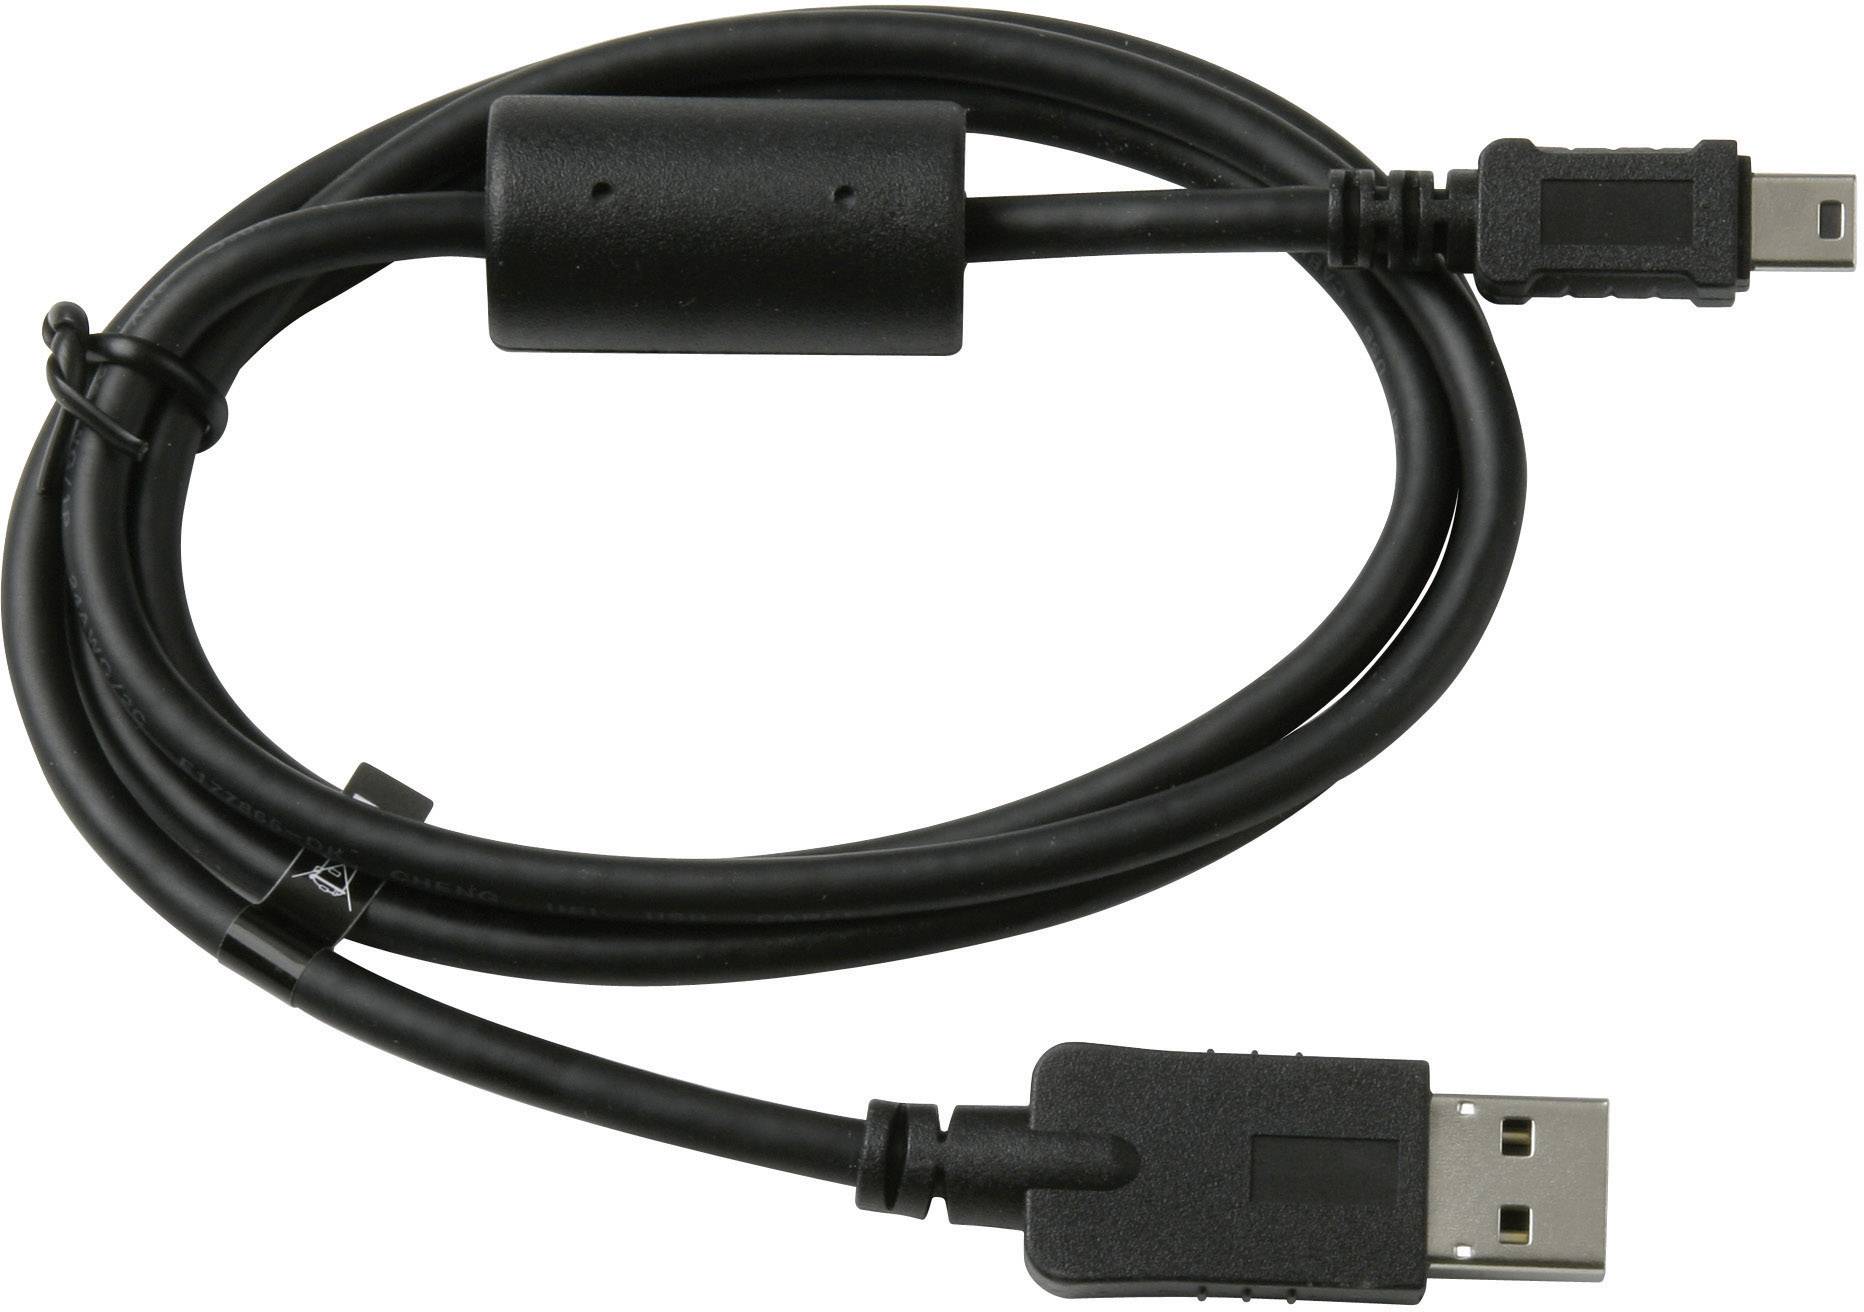 GARMIN Kabel für PC (USB), USB Stecker